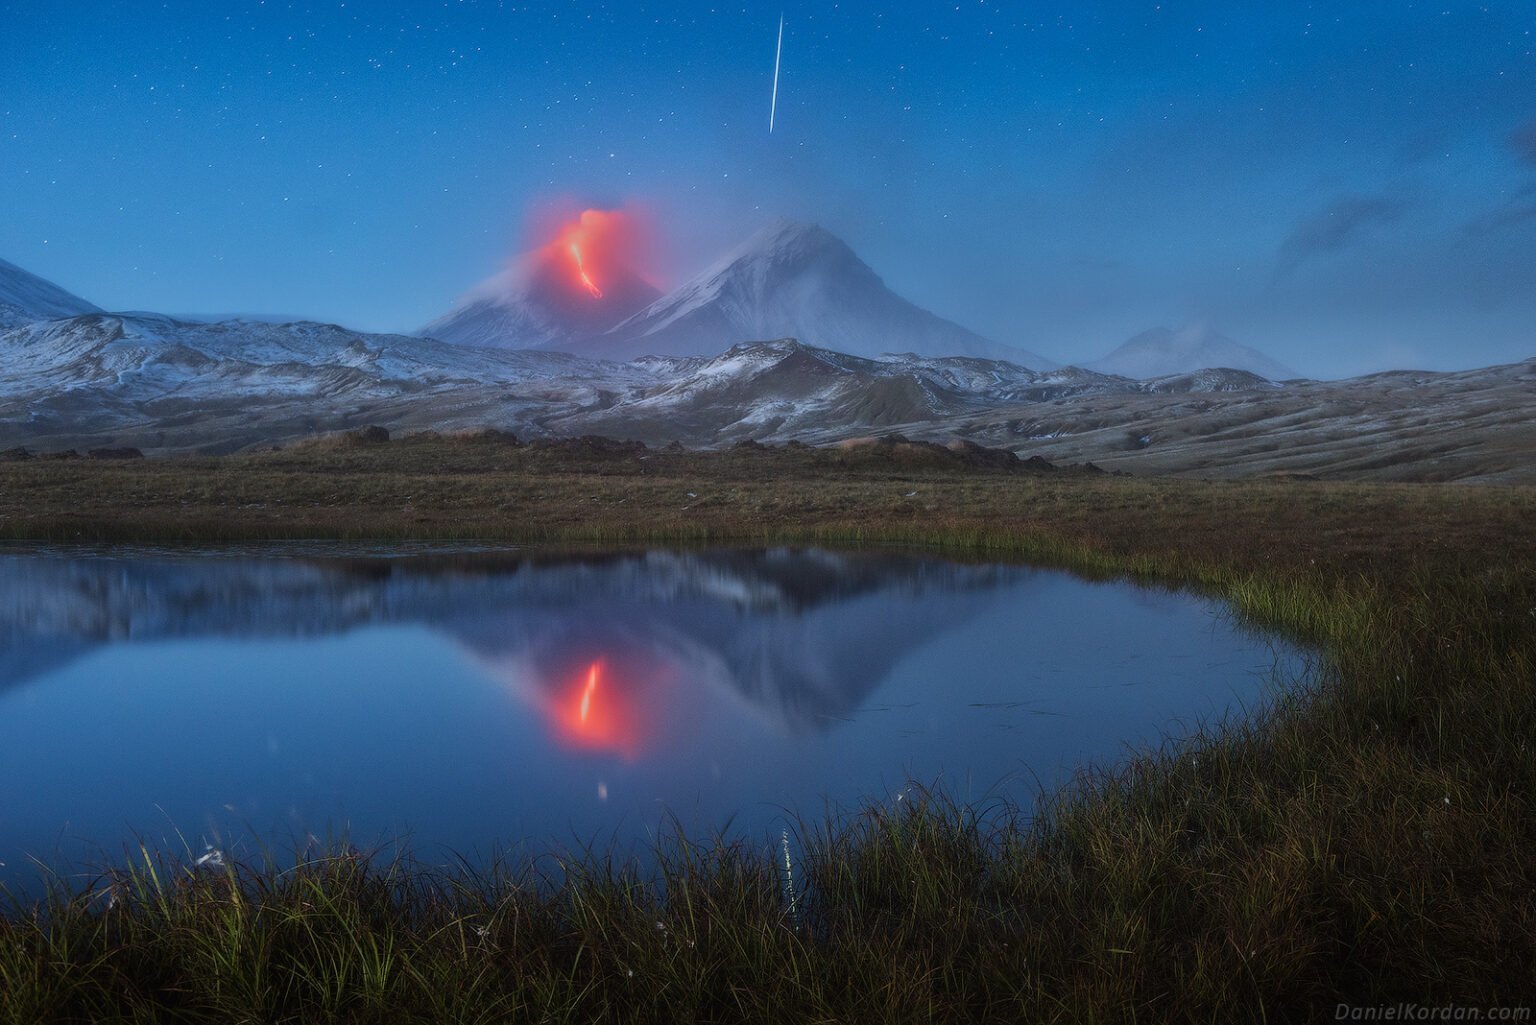 Un fotógrafo capta la extraordinaria coincidencia de un volcán en erupción y una estrella fugaz